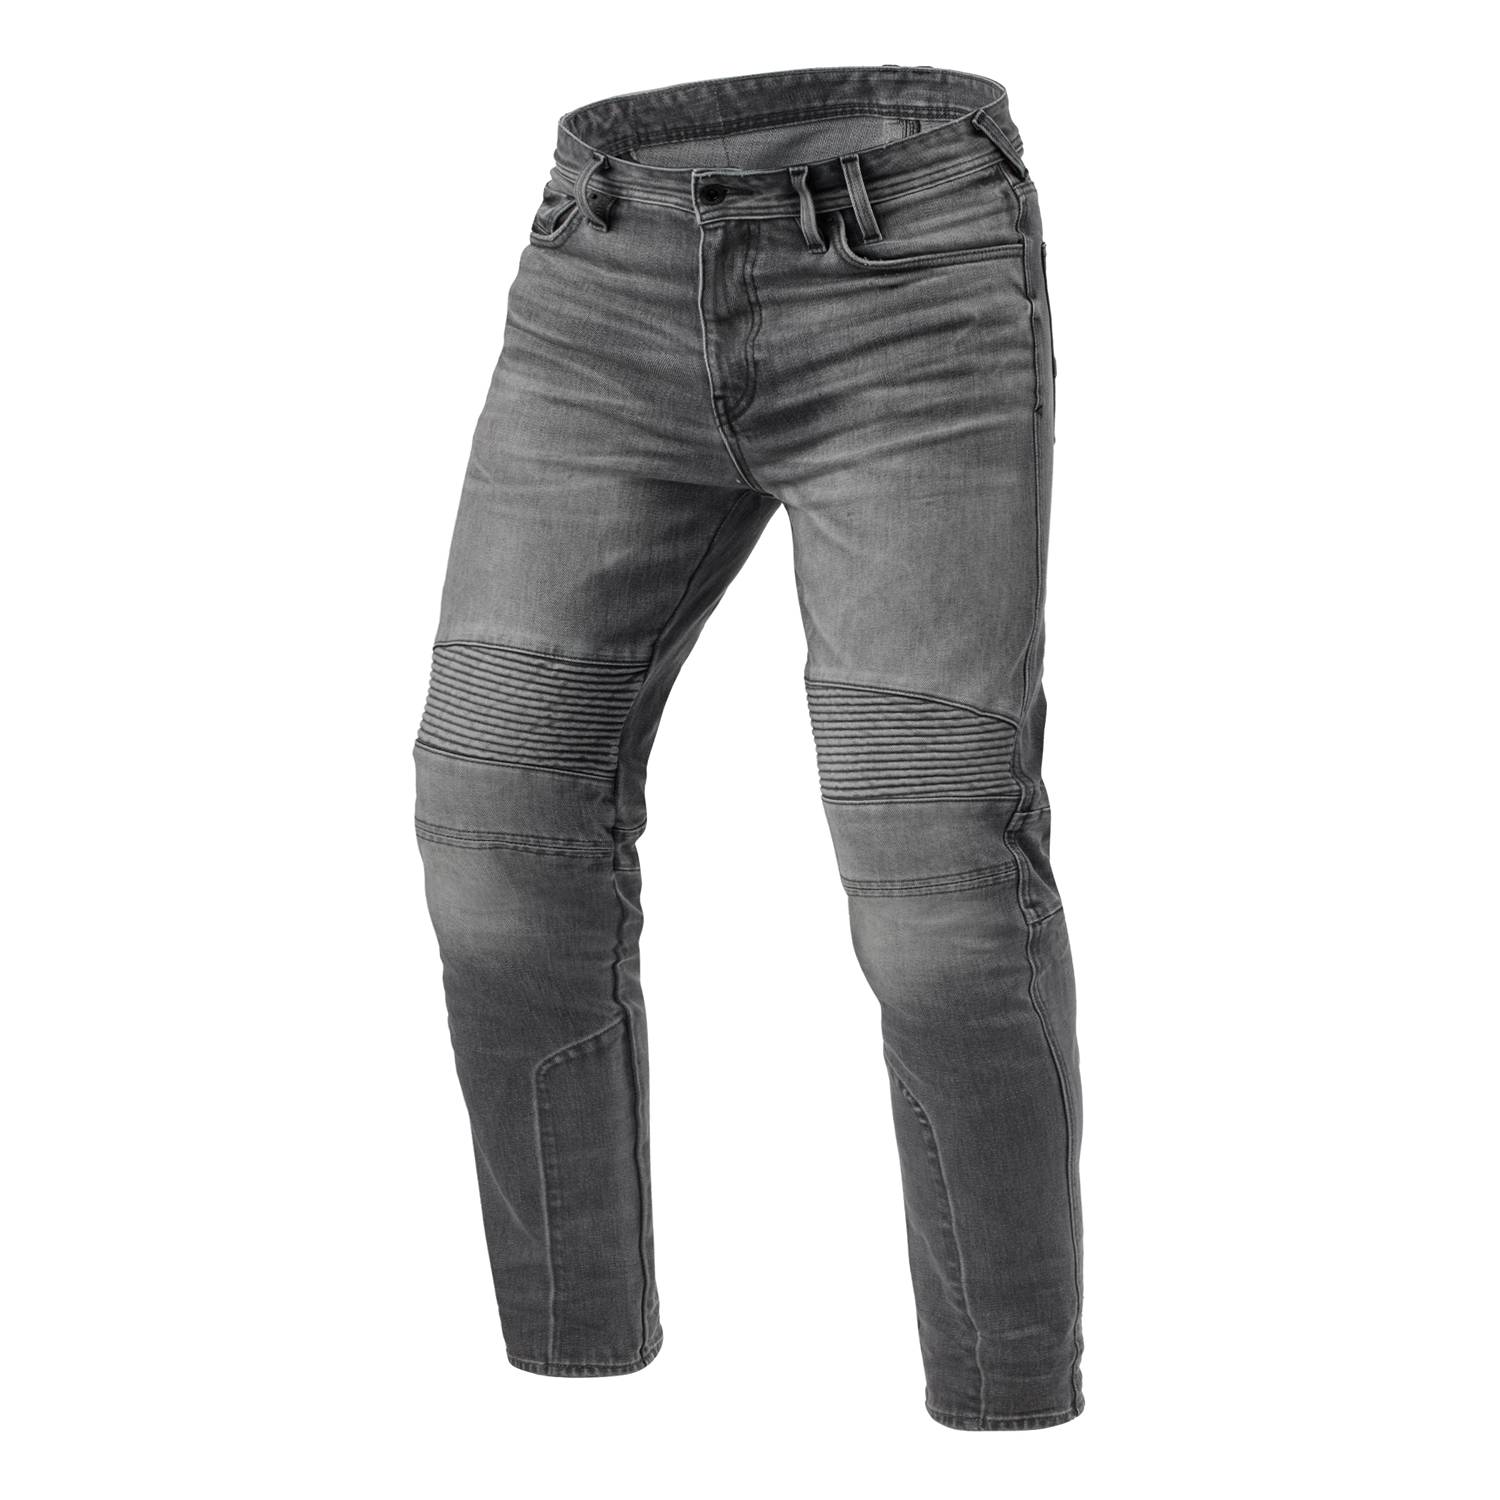 Image of REV'IT! Jeans Moto 2 TF Medium Grey Used L32 Size L32/W30 ID 8700001375580